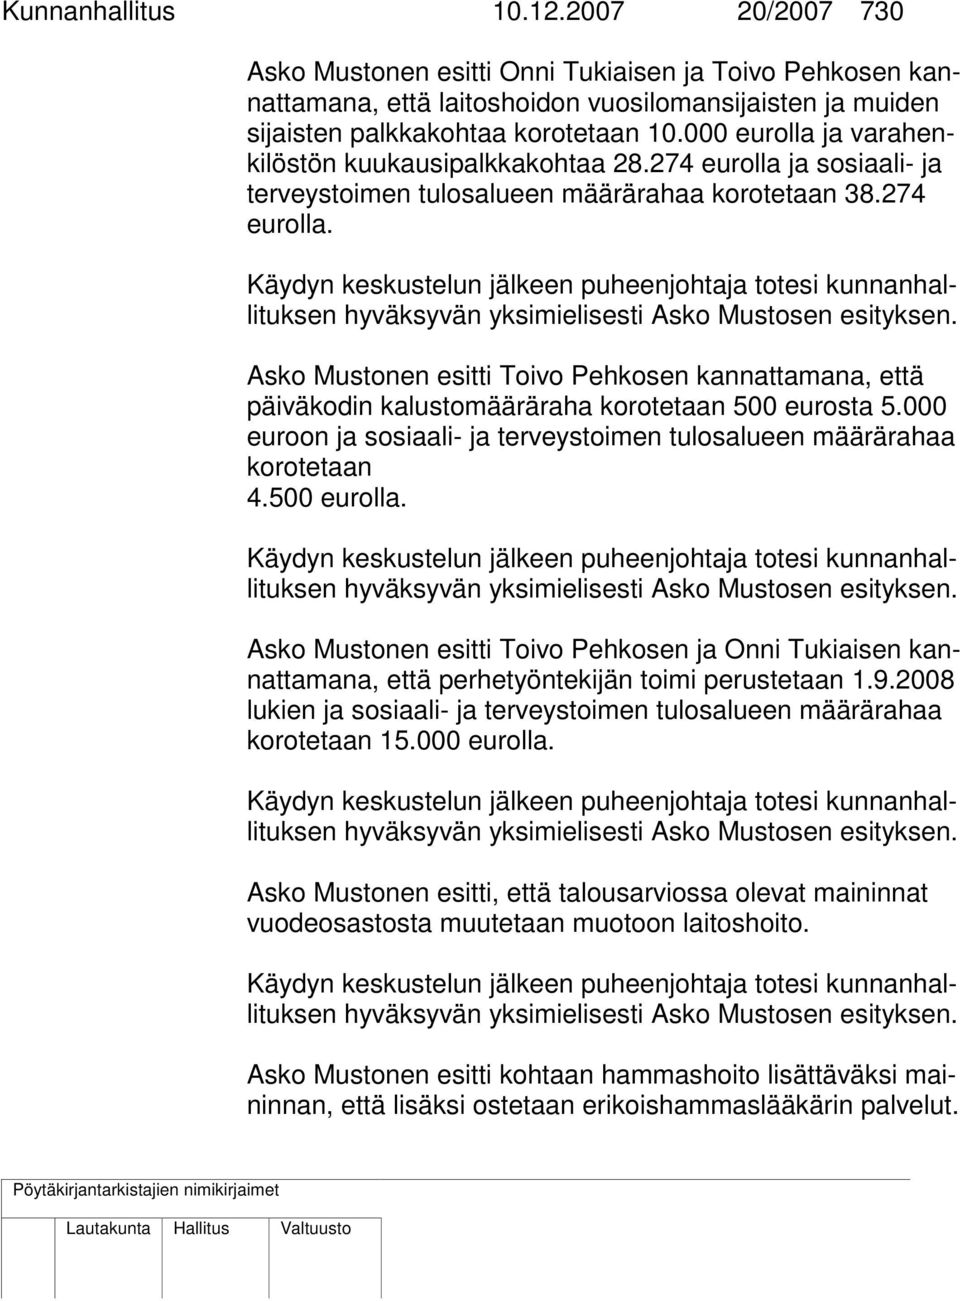 Asko Mustonen esitti Toivo Pehkosen kannattamana, että päiväkodin kalustomääräraha korotetaan 500 eurosta 5.000 euroon ja sosiaali- ja terveystoimen tulosalueen määrärahaa korotetaan 4.500 eurolla.